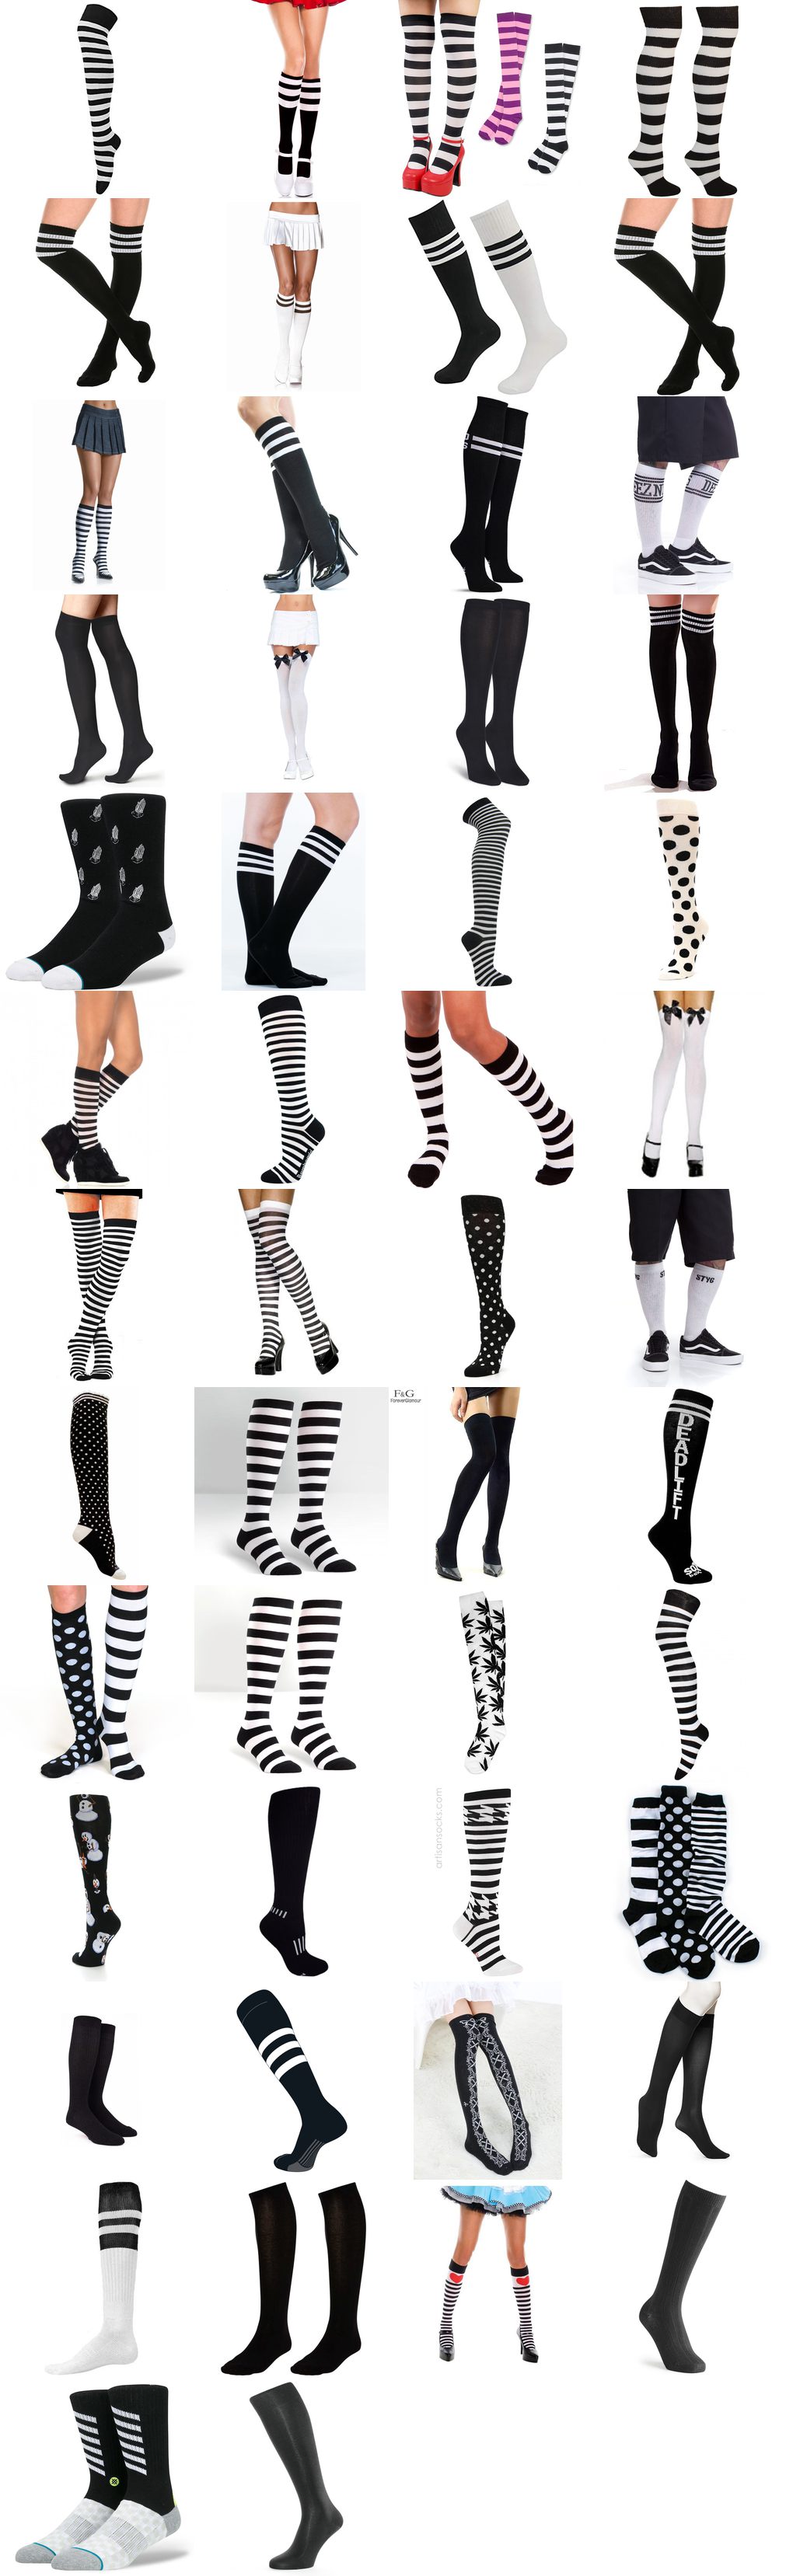 black and white knee high socks